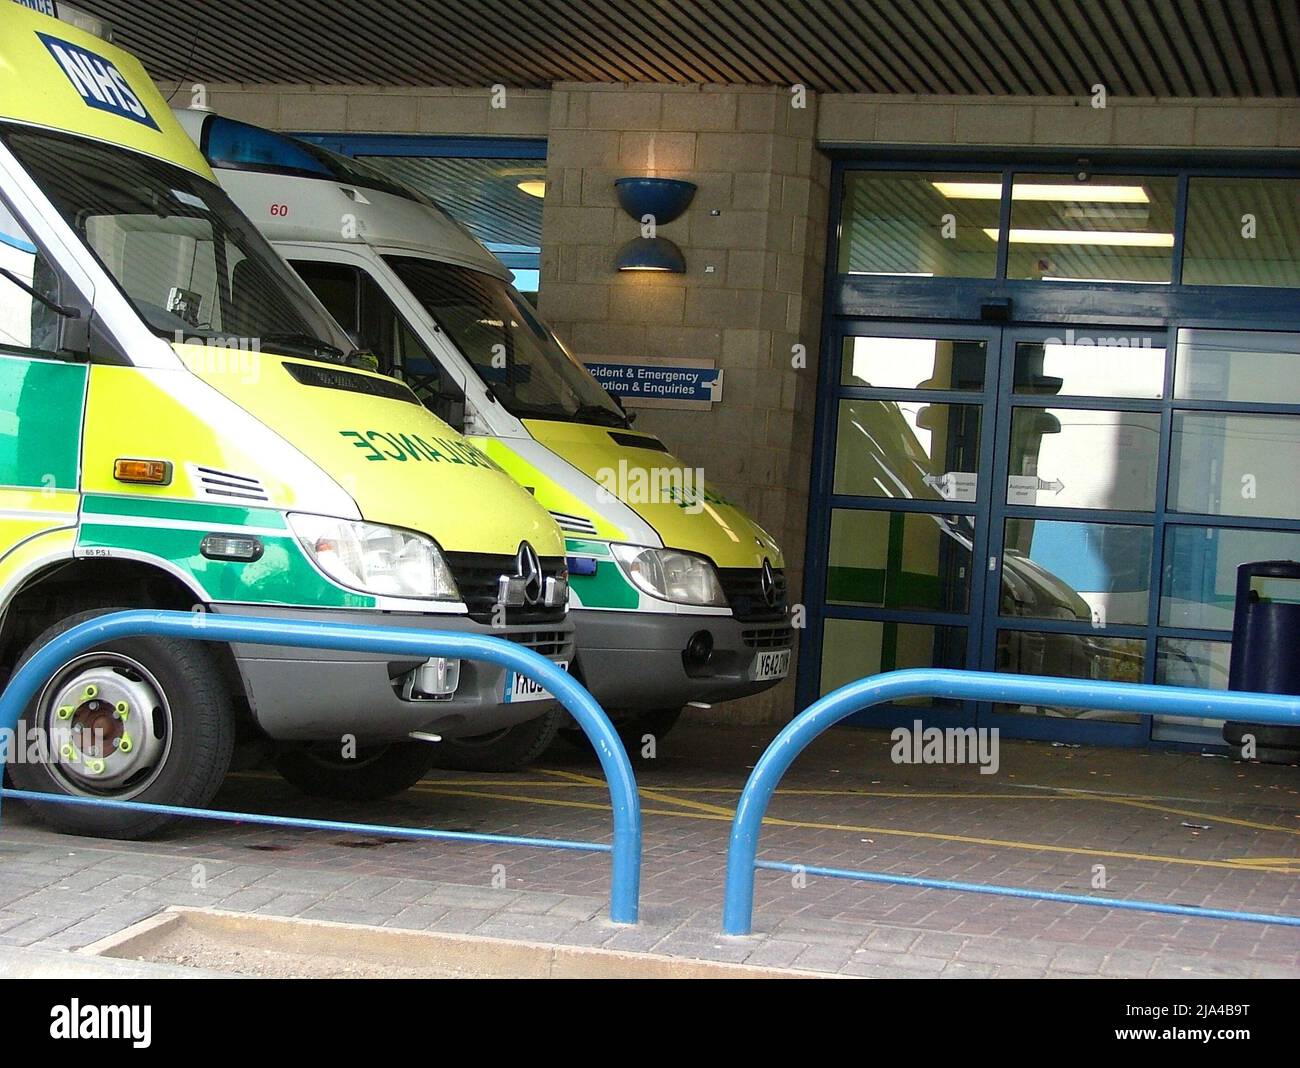 Ambulanza presso il reparto a&e dell'ospedale Foto Stock